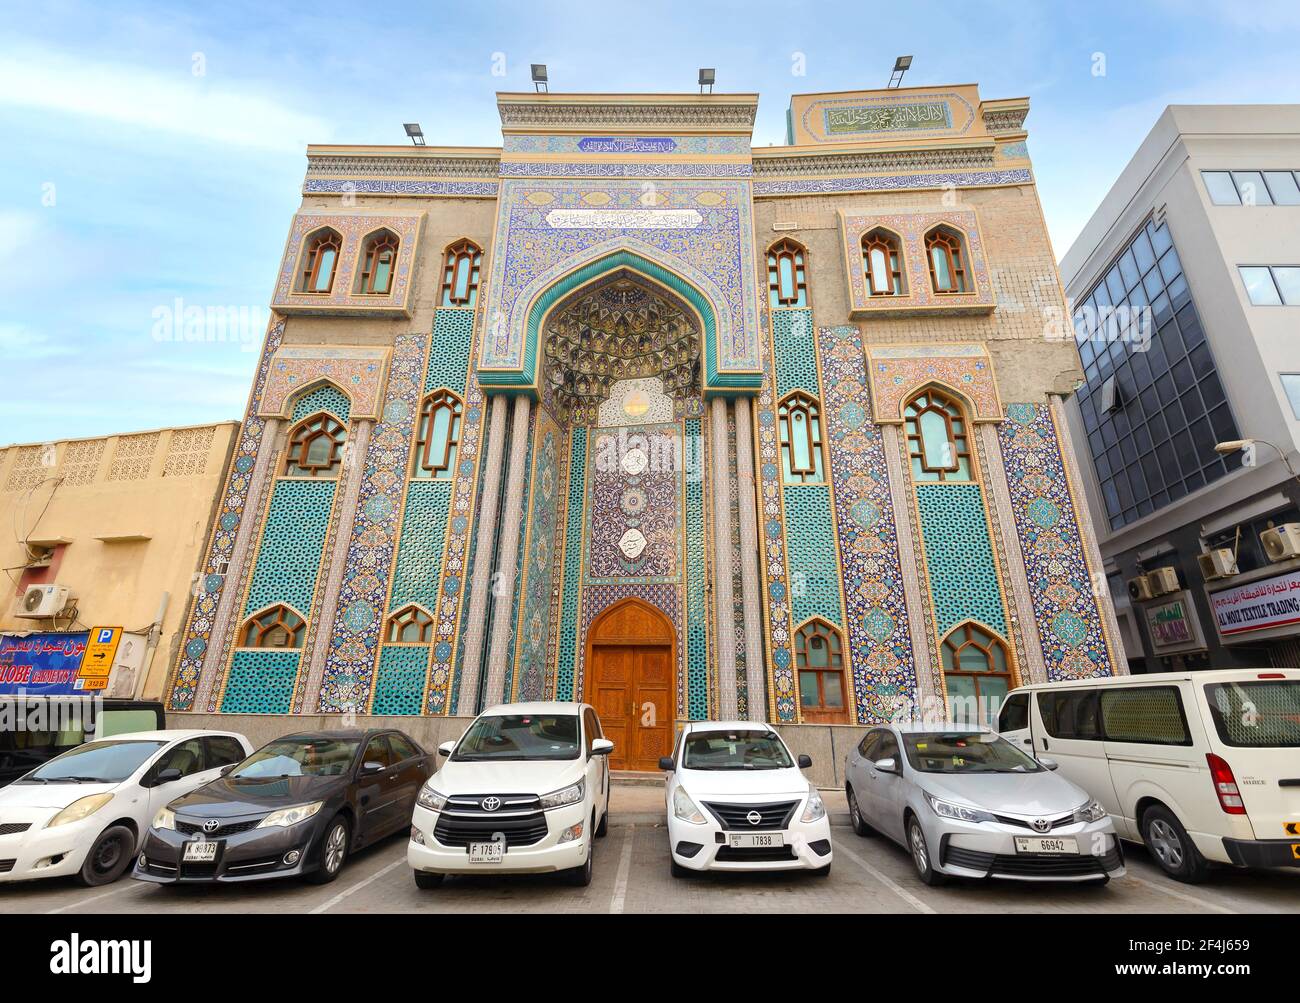 Ali ibn Abi Talib iranische Moschee in Bur Dubai. Eine schiitische iranische Moschee Hosainia in Vereinigte Arabische Emirate. Moschee im persischen Stil in Dubai. Stockfoto